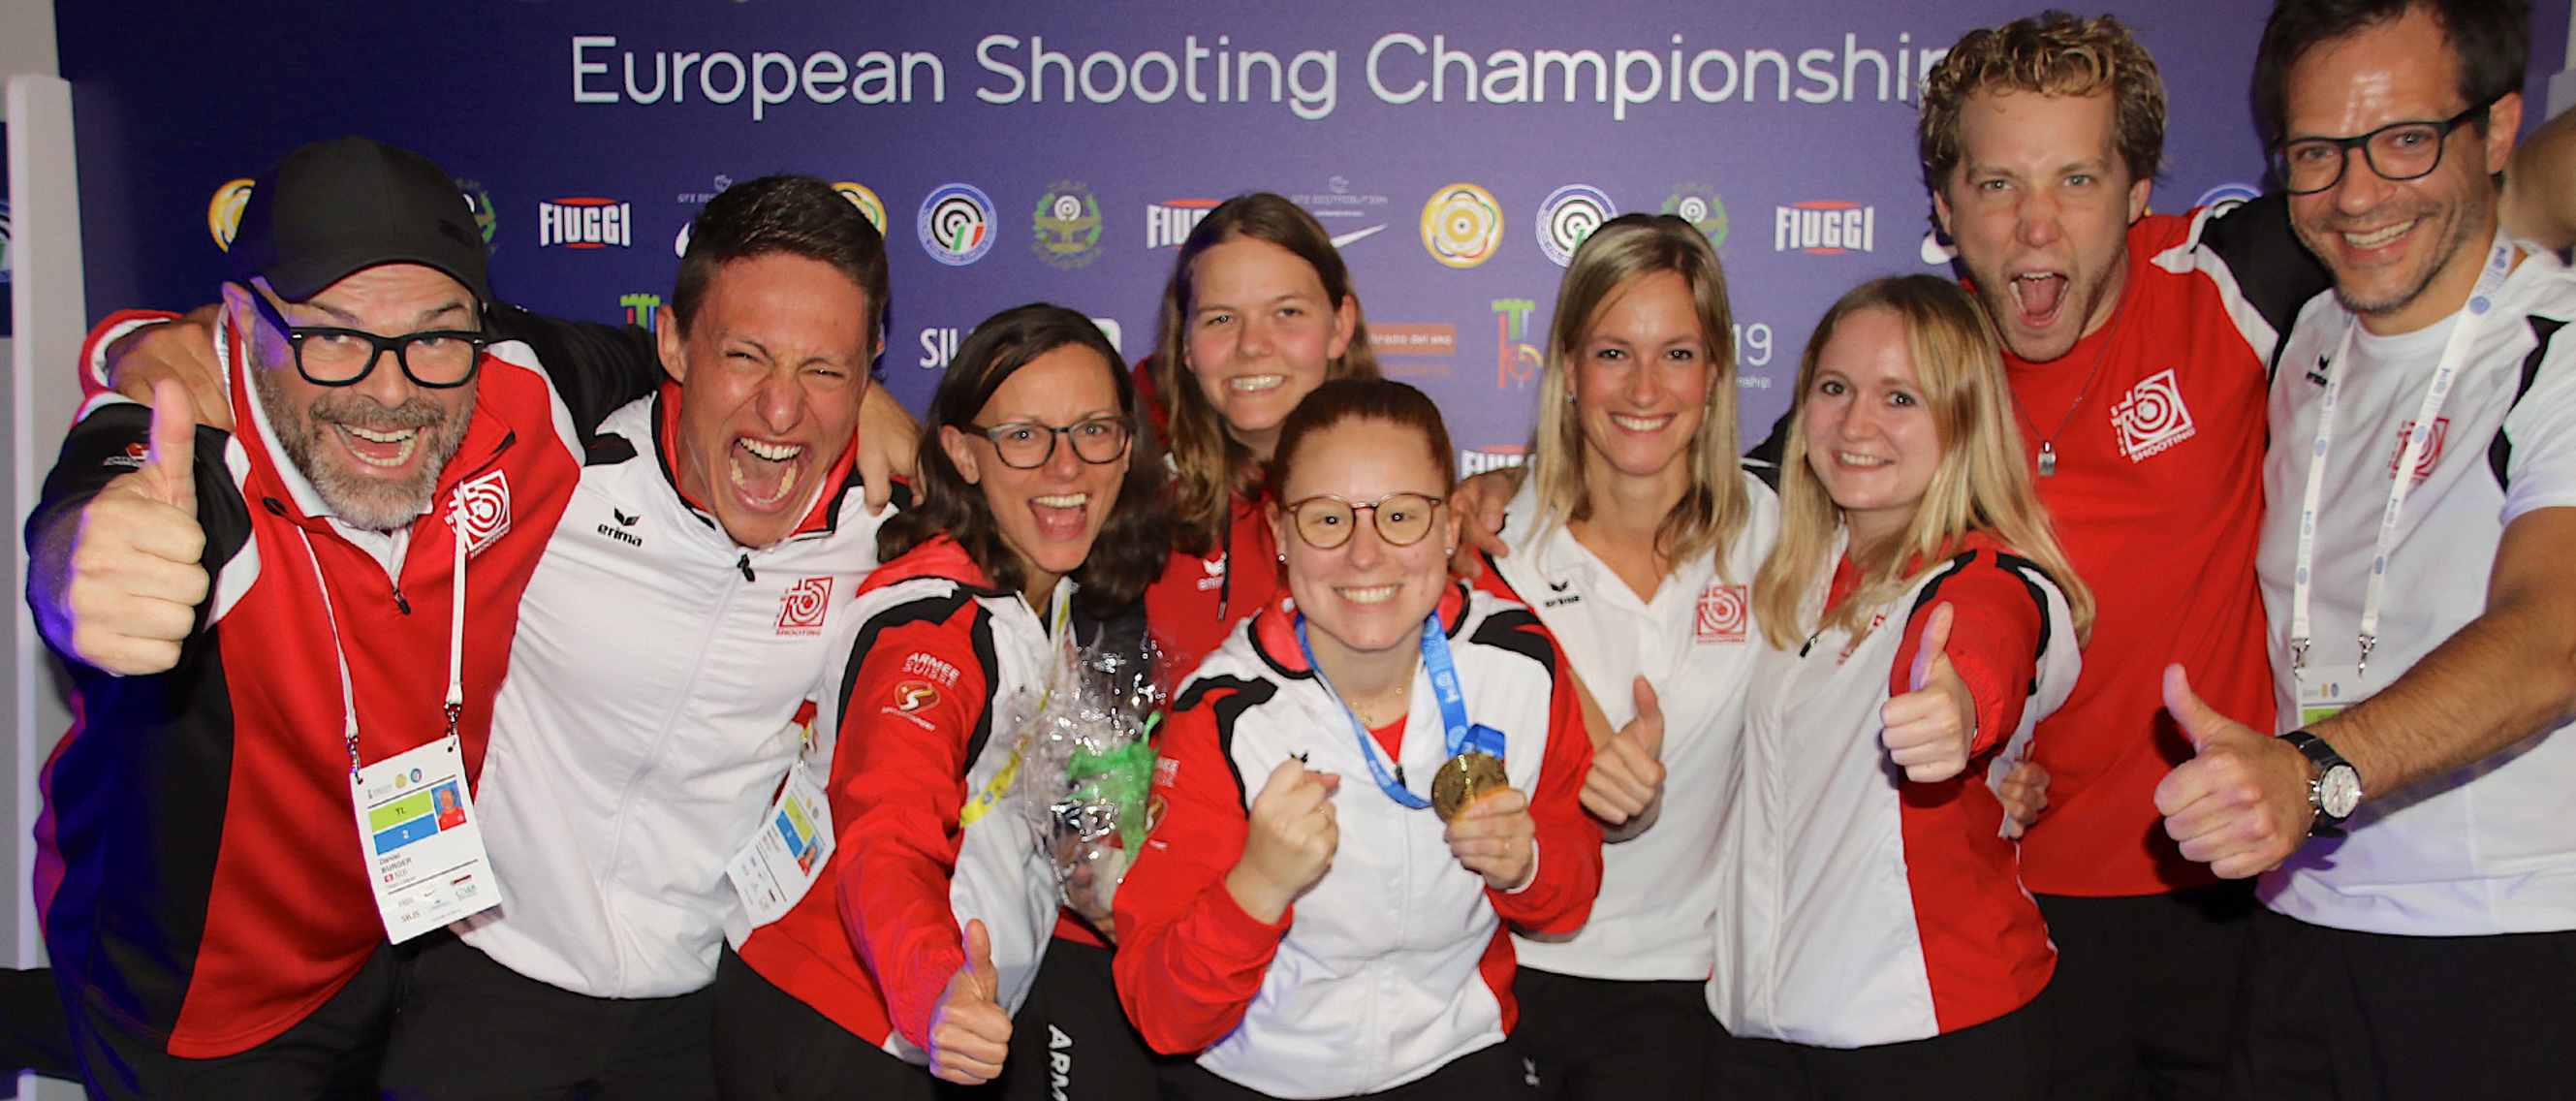 Con 14 medaglie, il team svizzero ai campionati europei a Bologna e Tolmezzo ha ottenuto un ottimo risultato. La medaglia d’oro di Nina Christen (al centro) nel match tre posizioni al fucile 50m è stato il punto culminante.
(Foto: Risto Aarrekivi/ESC)